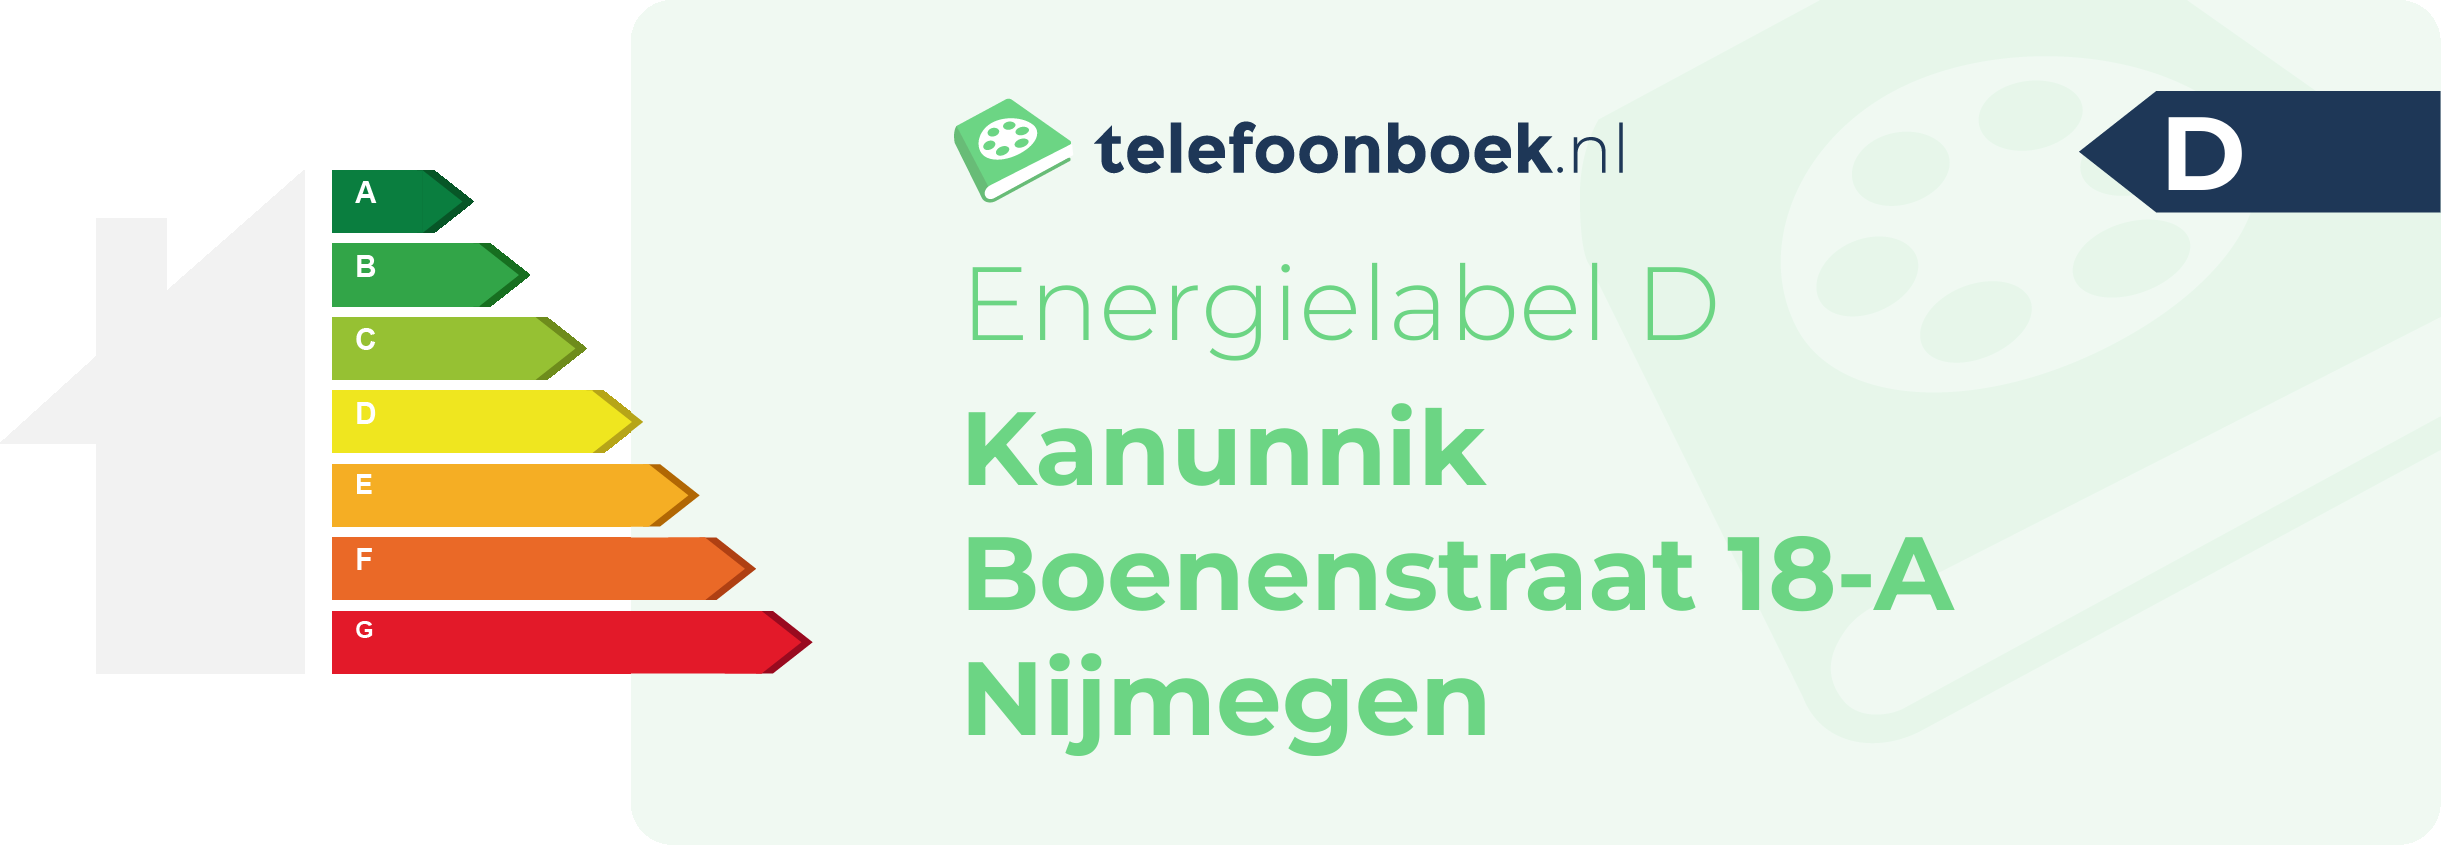 Energielabel Kanunnik Boenenstraat 18-A Nijmegen